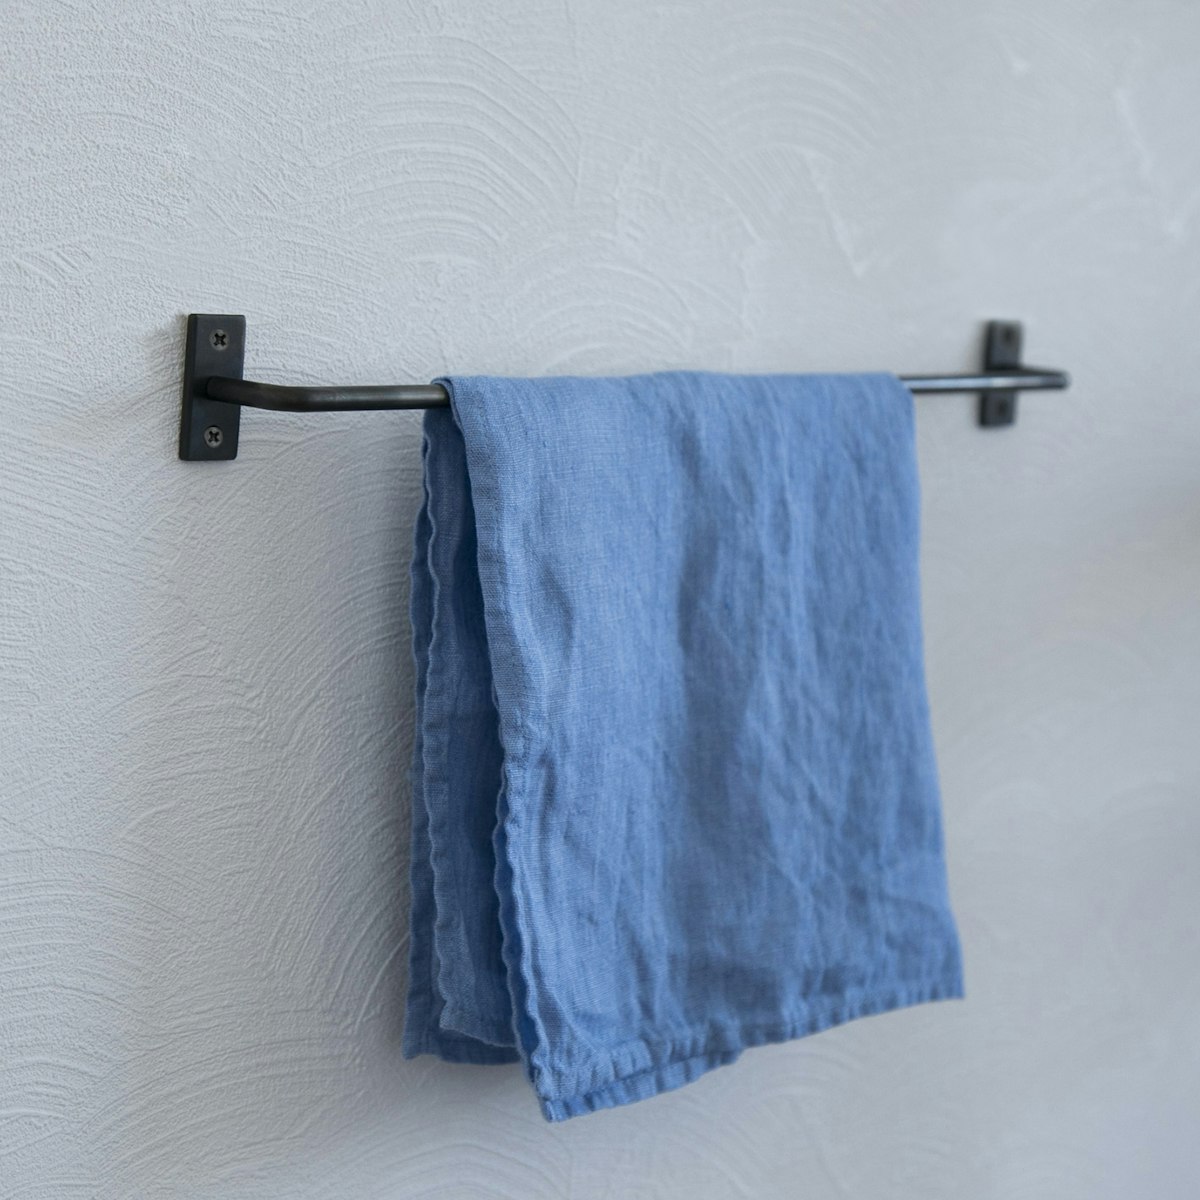 千葉工作所/Towel holder Iron（タオルホルダー 鉄）M